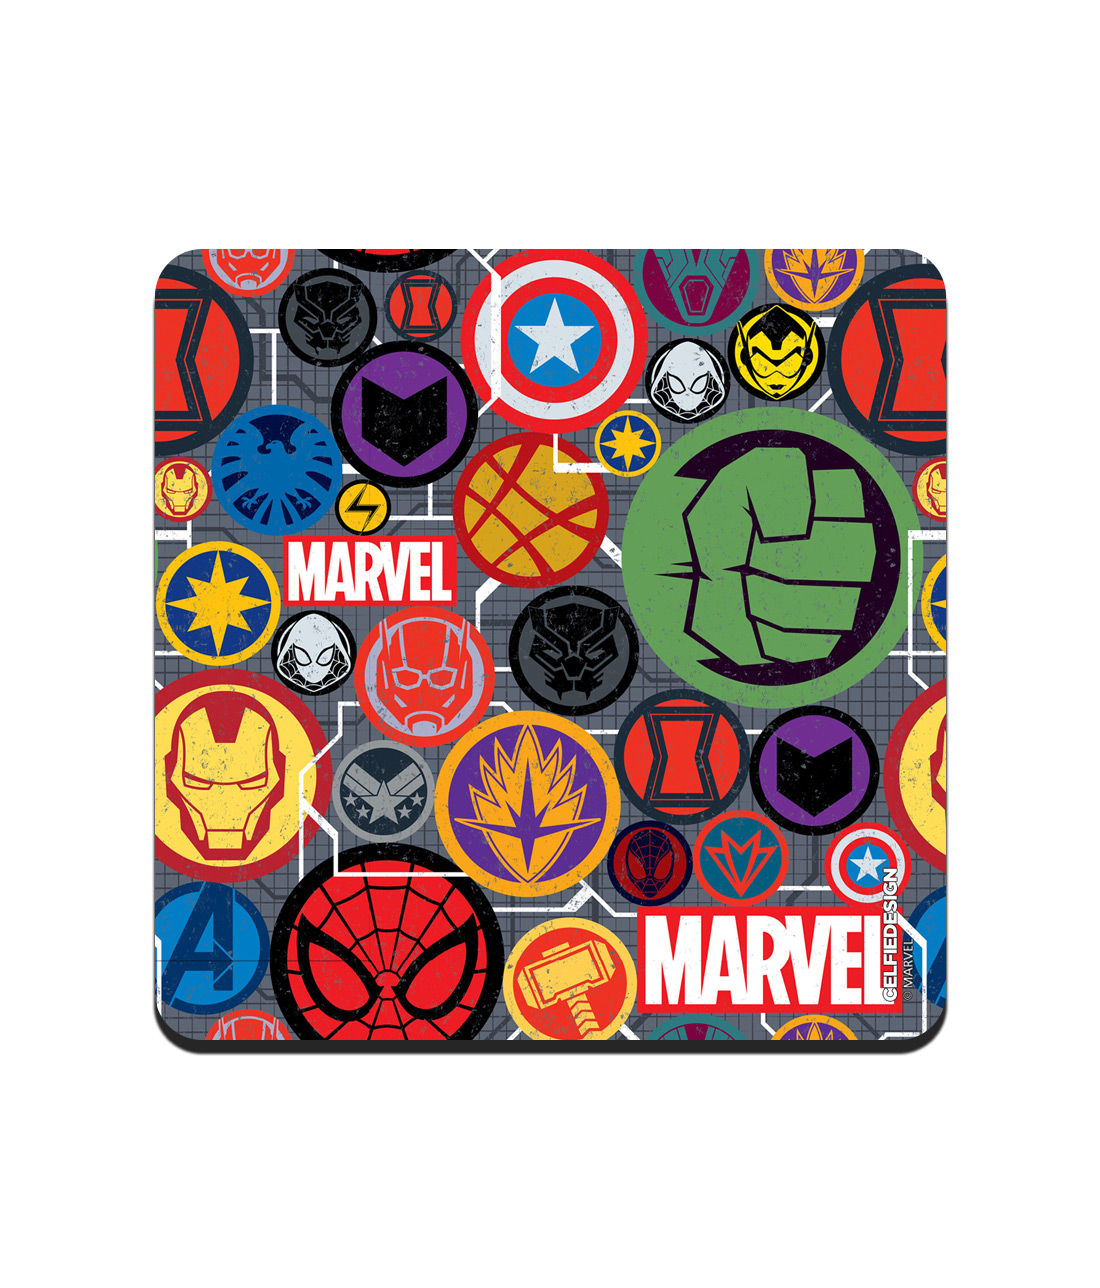 Marvel Iconic Mashup - 10 X 10 (cm) Coasters -Celfie Design - India - www.superherotoystore.com